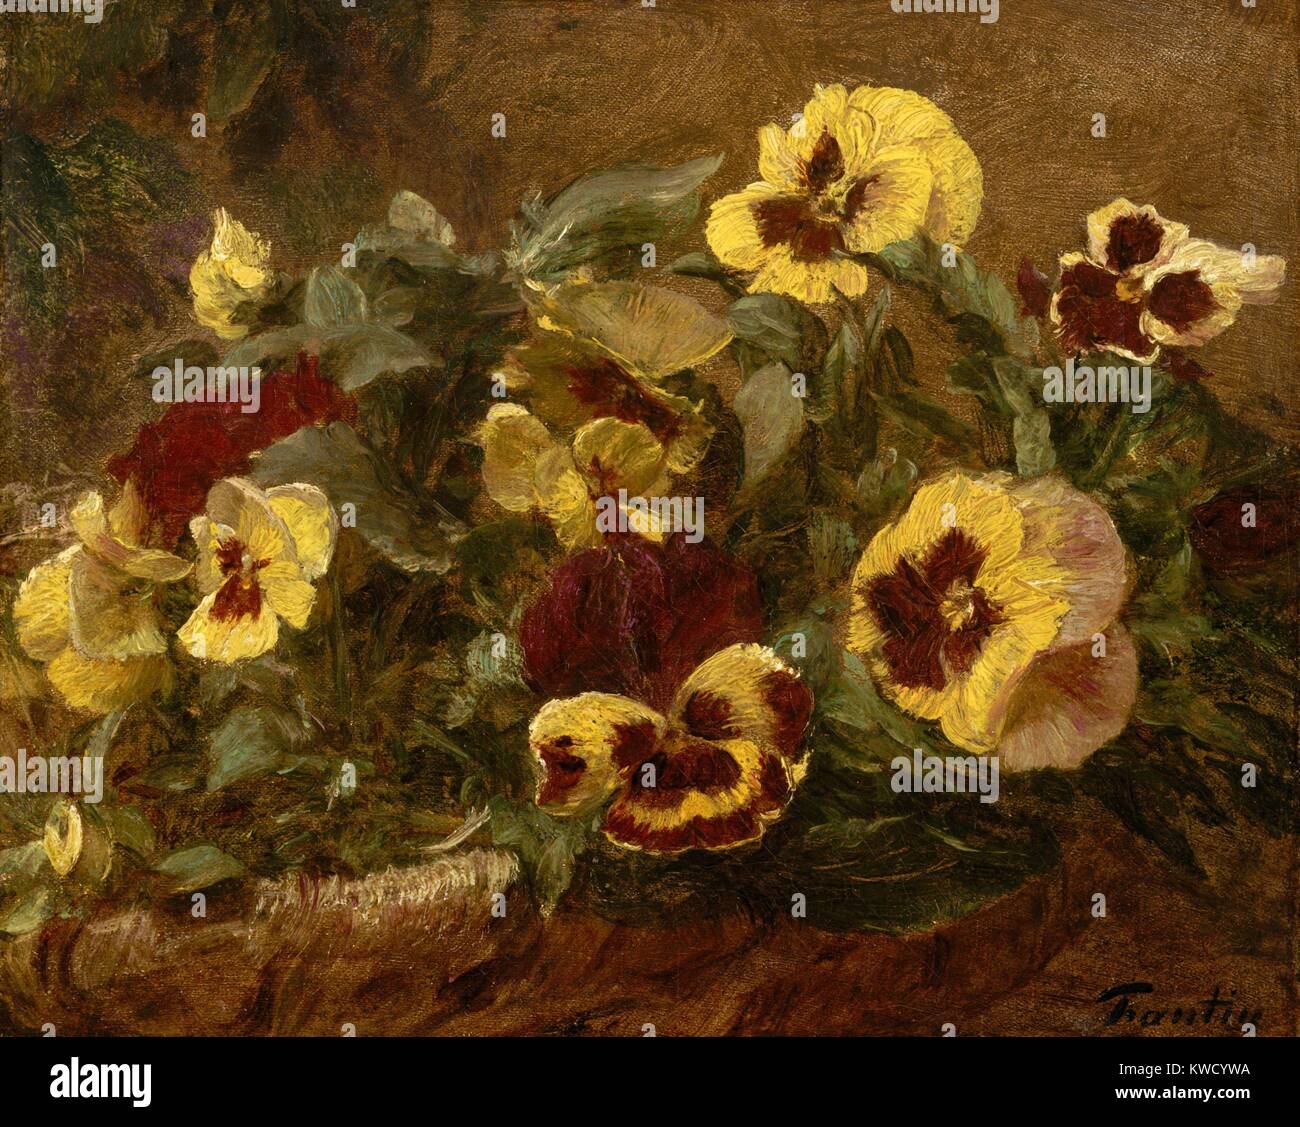 Pensées, par Henri Fantin-Latour, 1903, la peinture impressionniste français, huile sur toile. Cette étude de pensées dans un panier a été l'une des dernières toiles Fantin-Latours (BSLOC 2017 3 155) Banque D'Images